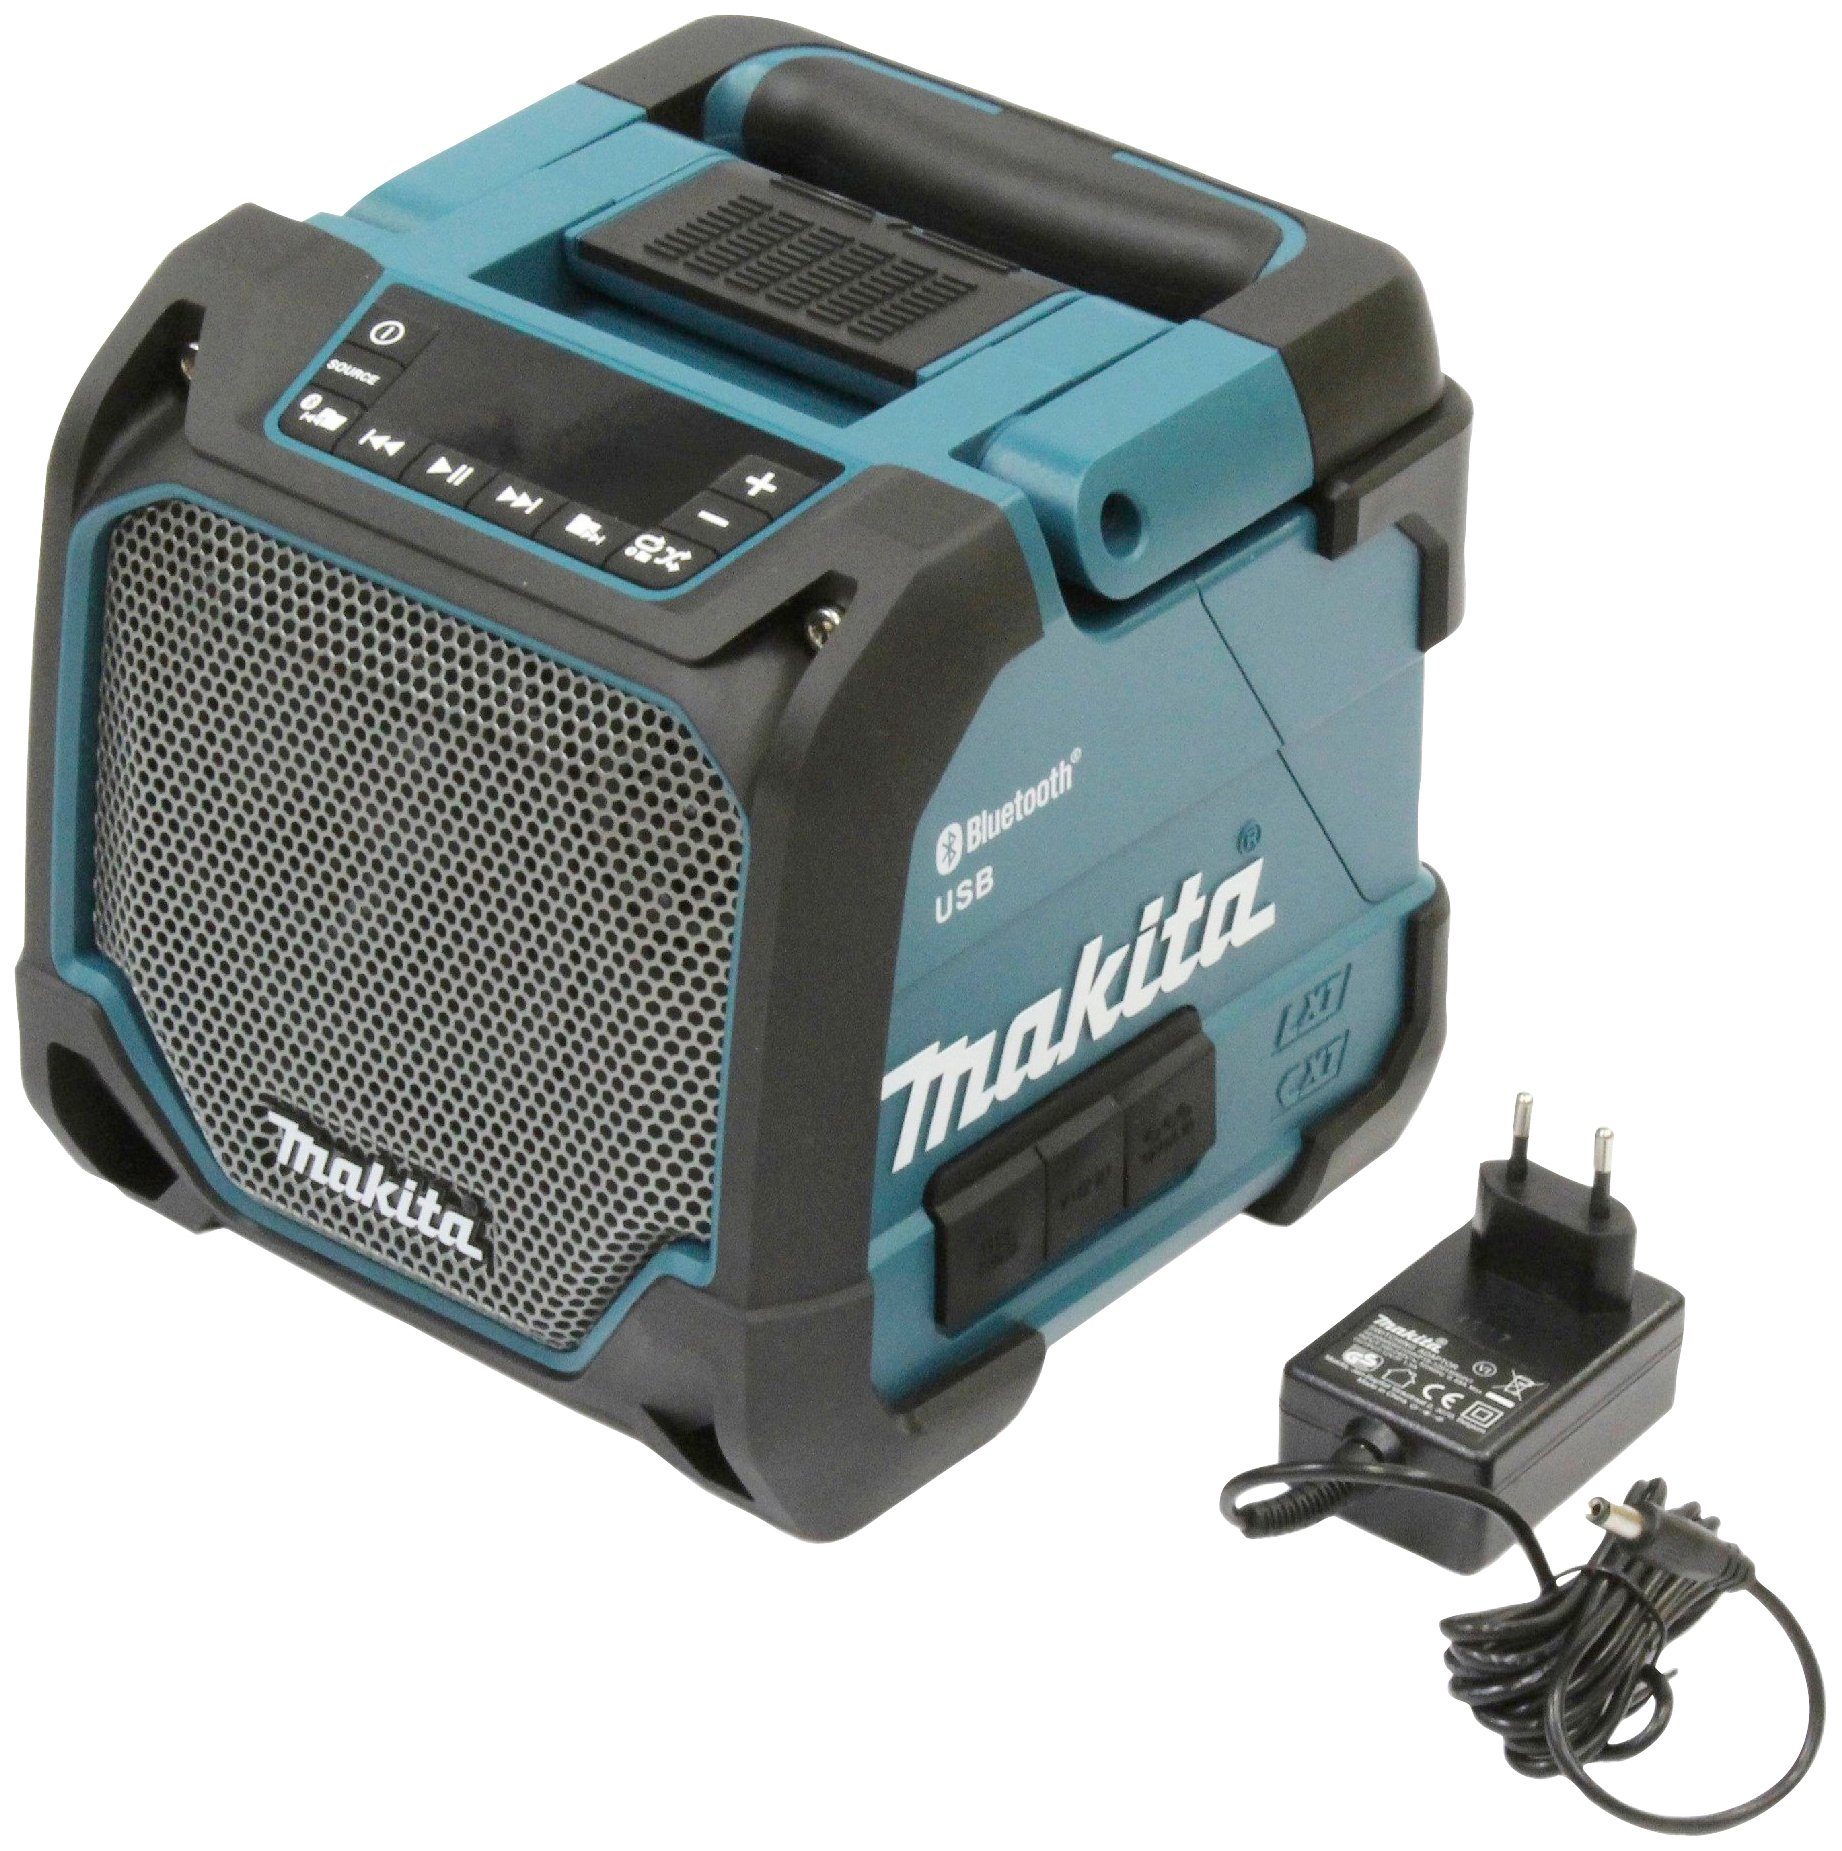 detaljer straf fordøjelse Makita DMR202 Bluetooth-Lautsprecher (mit Netzteil, ohne Akku und Ladegerät)